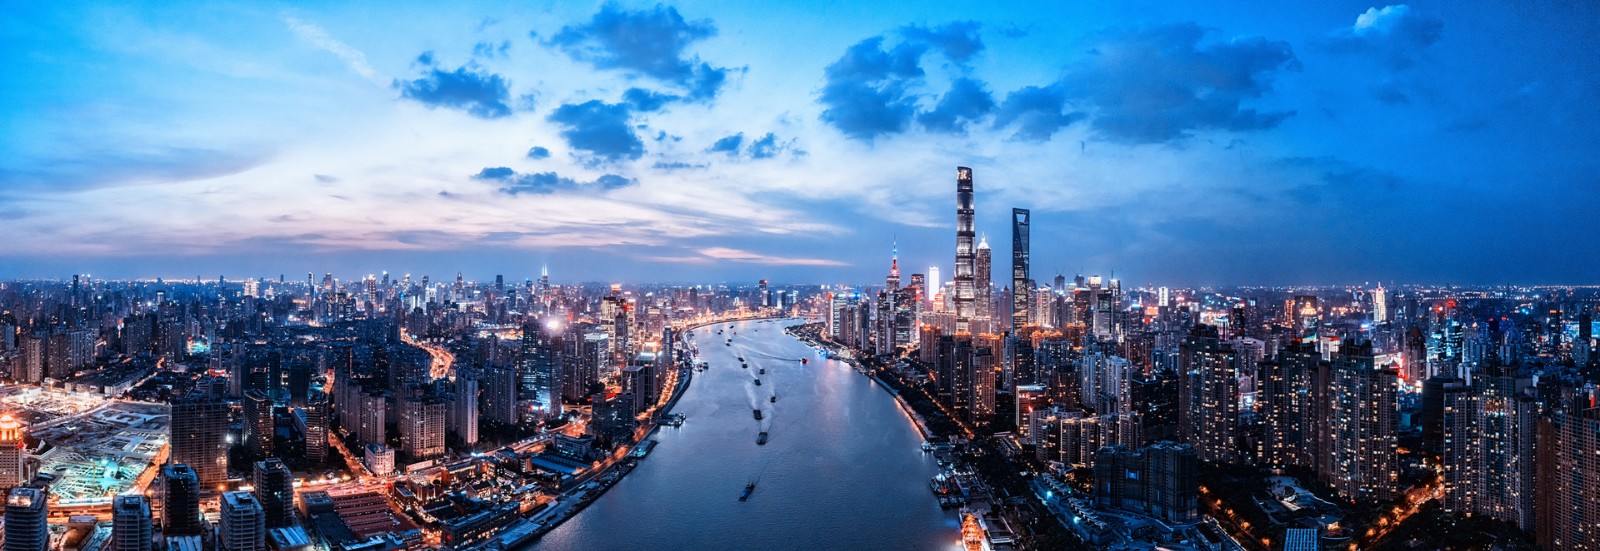 上海宝山区建设国际邮轮旅游目的地